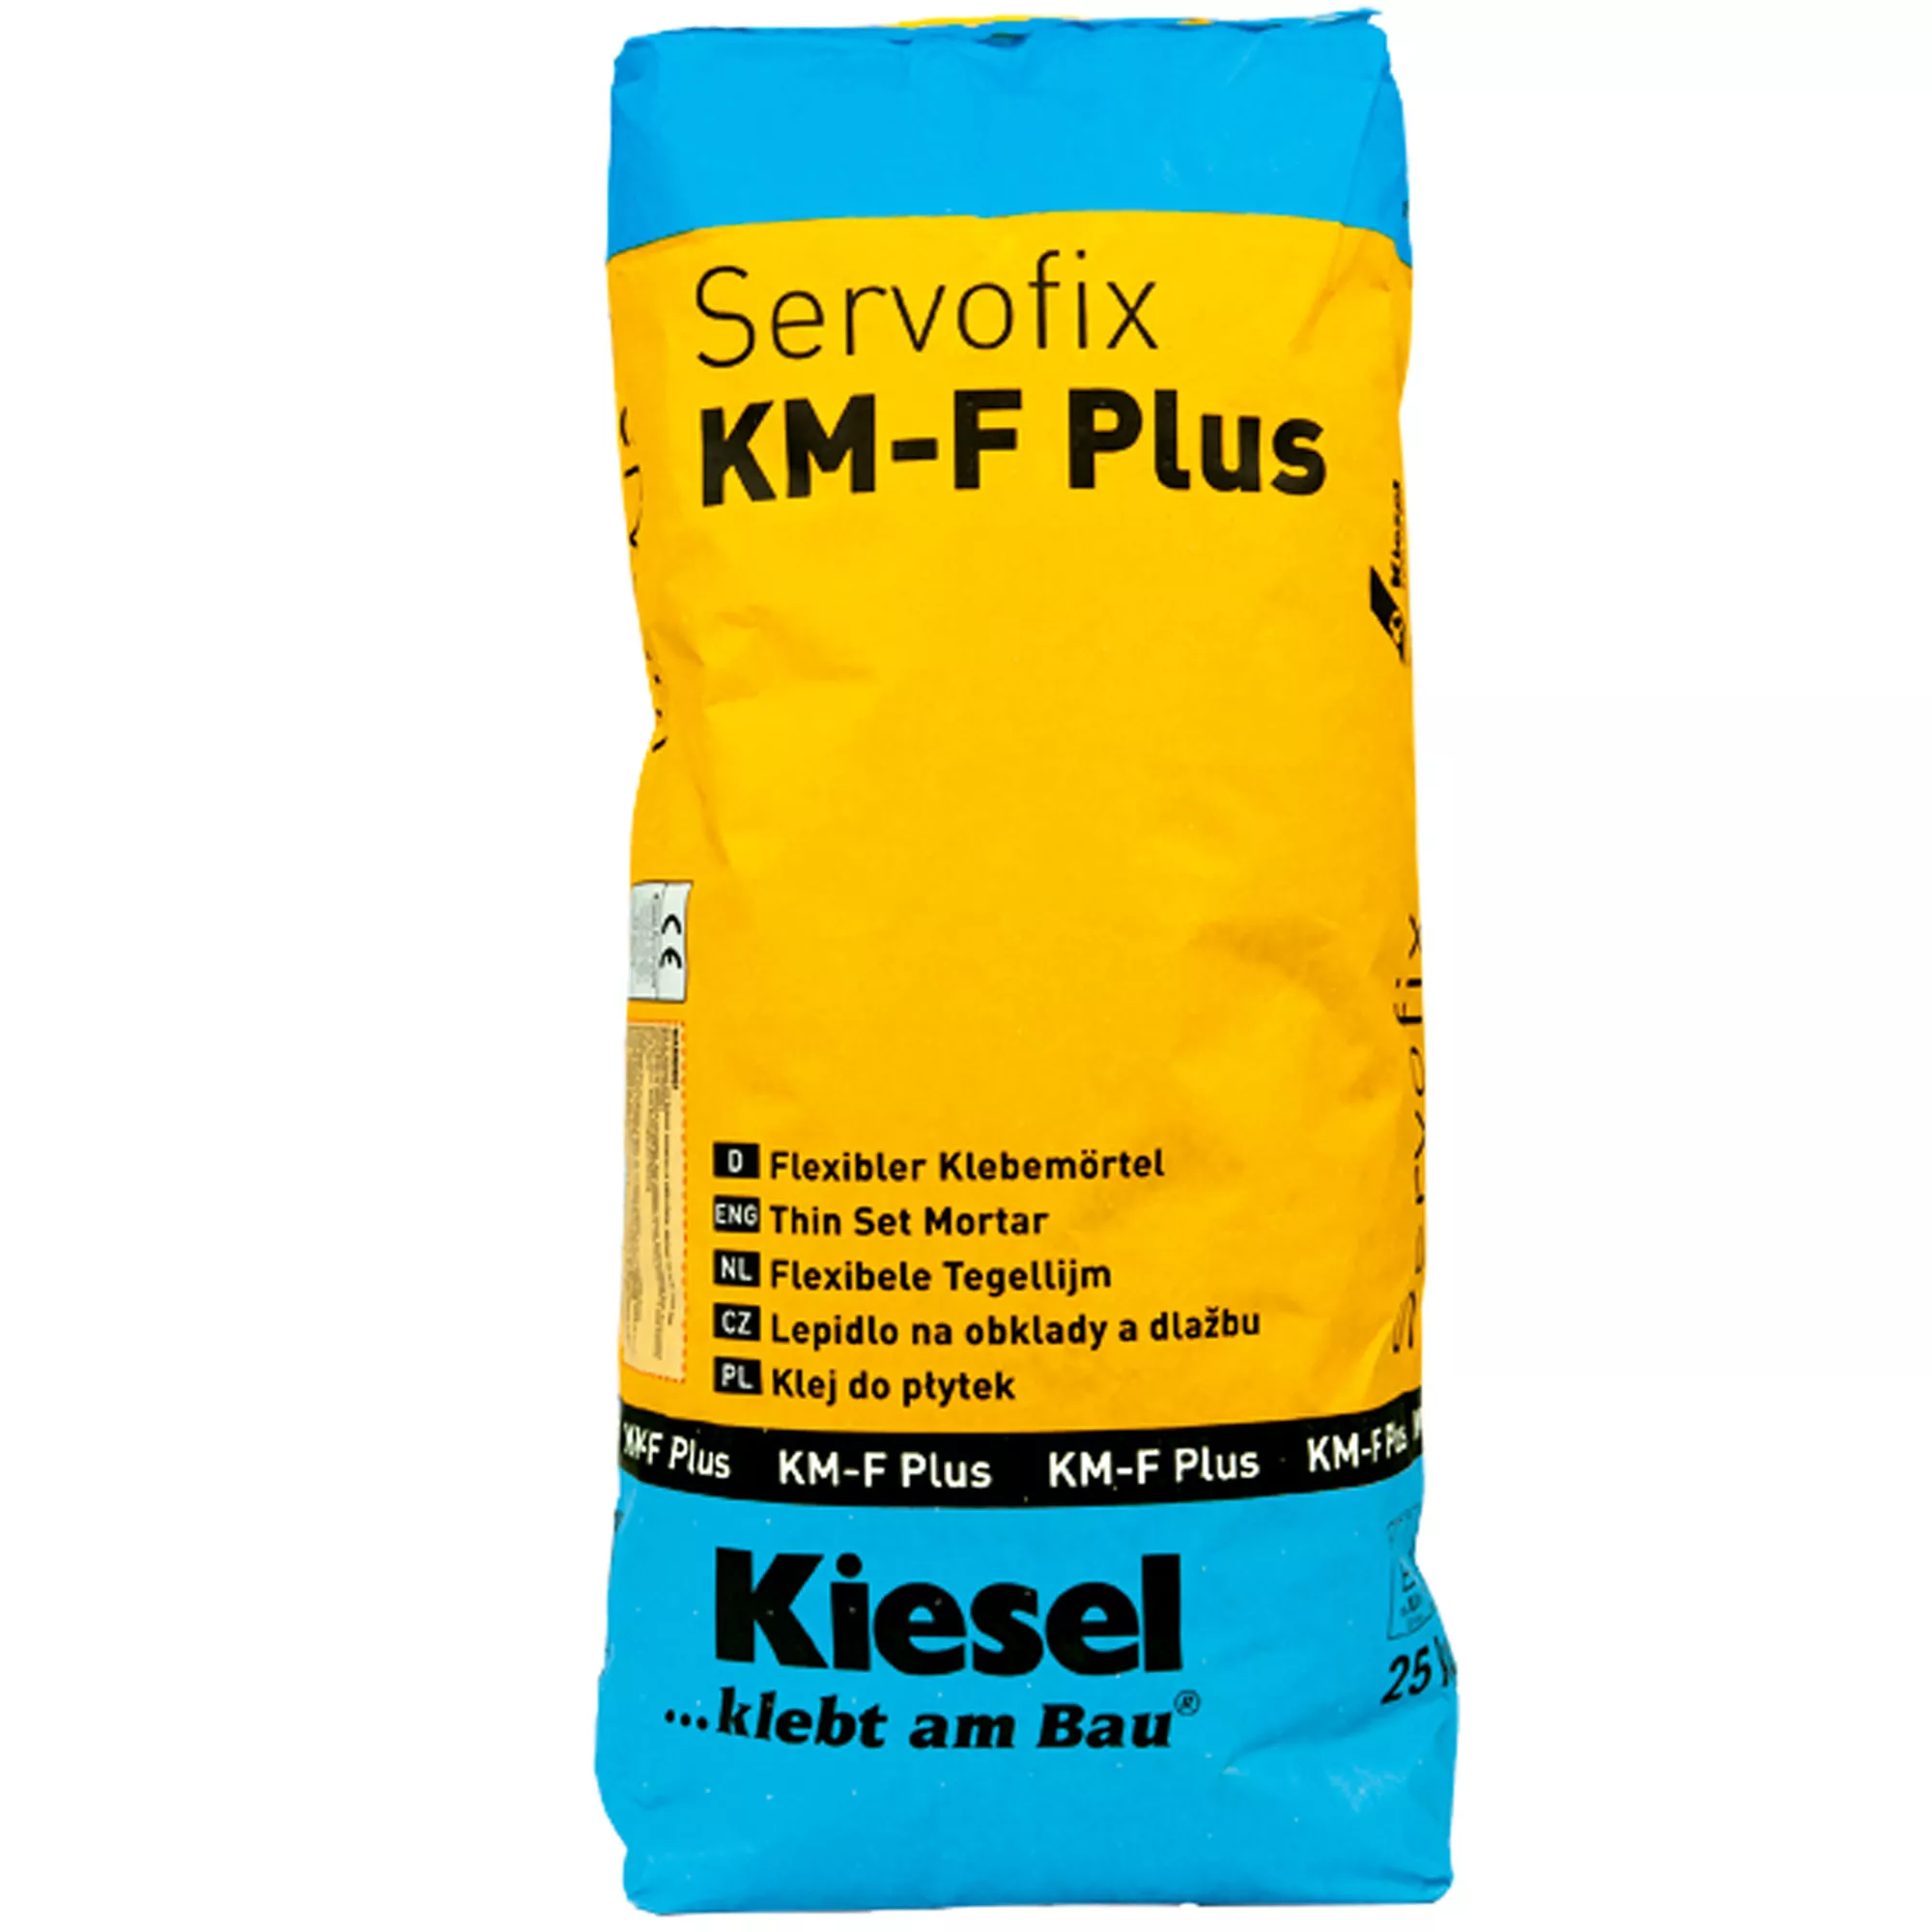 Colle à carrelage Kiesel Servofix KM-F Plus - mortier colle flexible grès fin, carreaux céramiques (25KG)